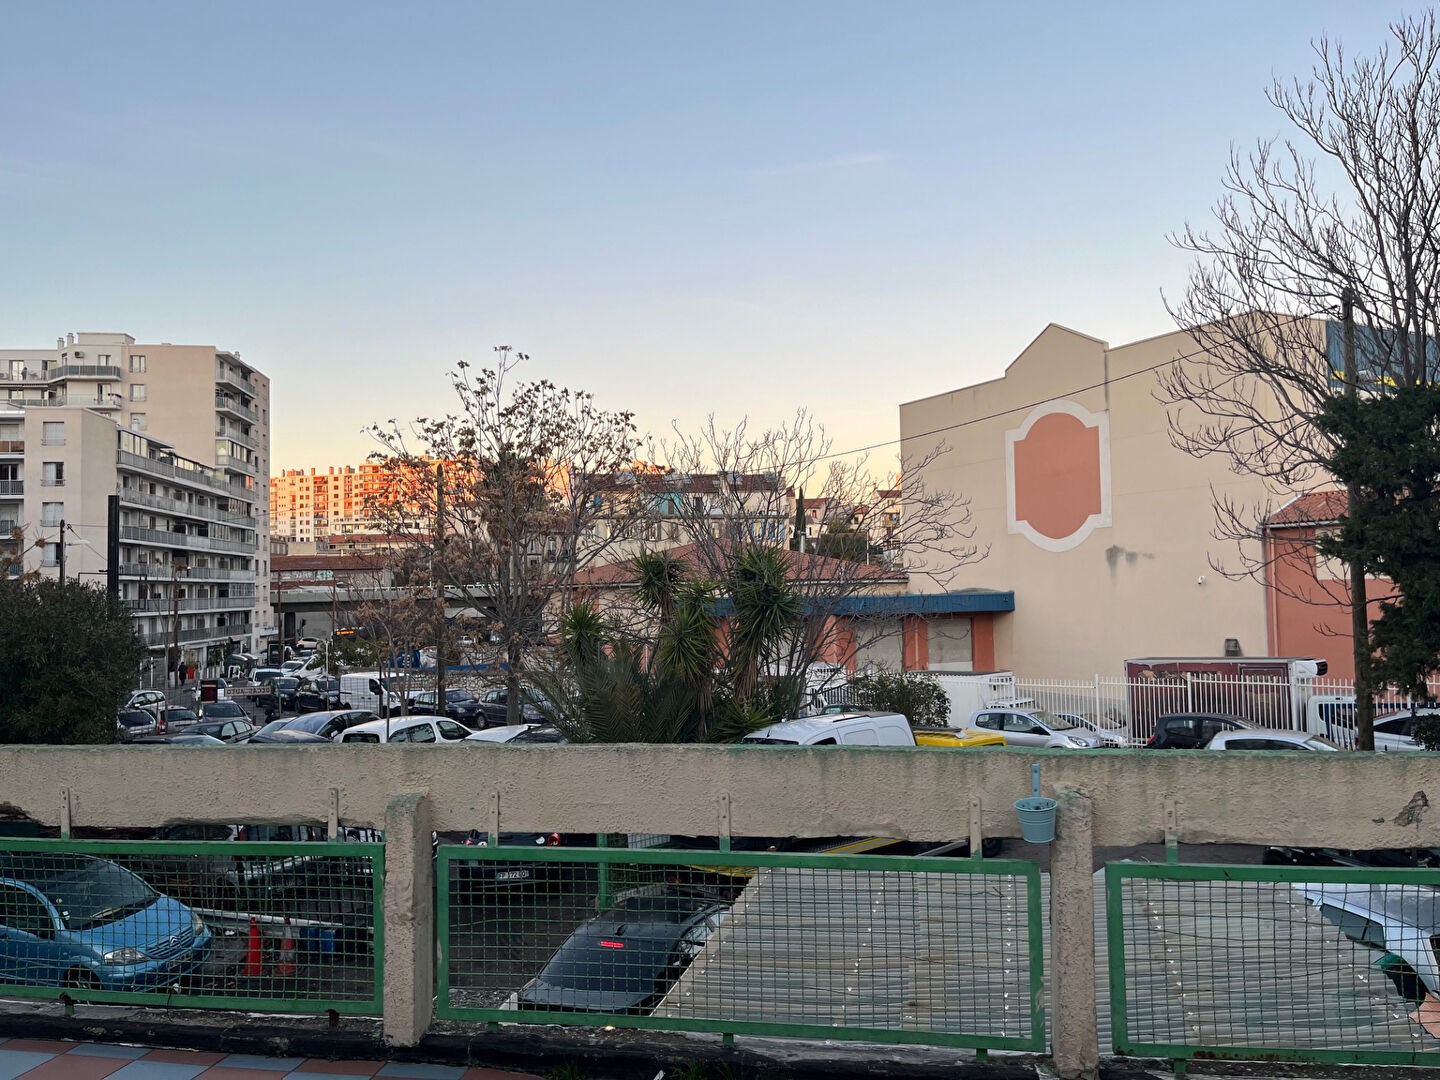 Vente Garage / Parking à Marseille 3e arrondissement 0 pièce